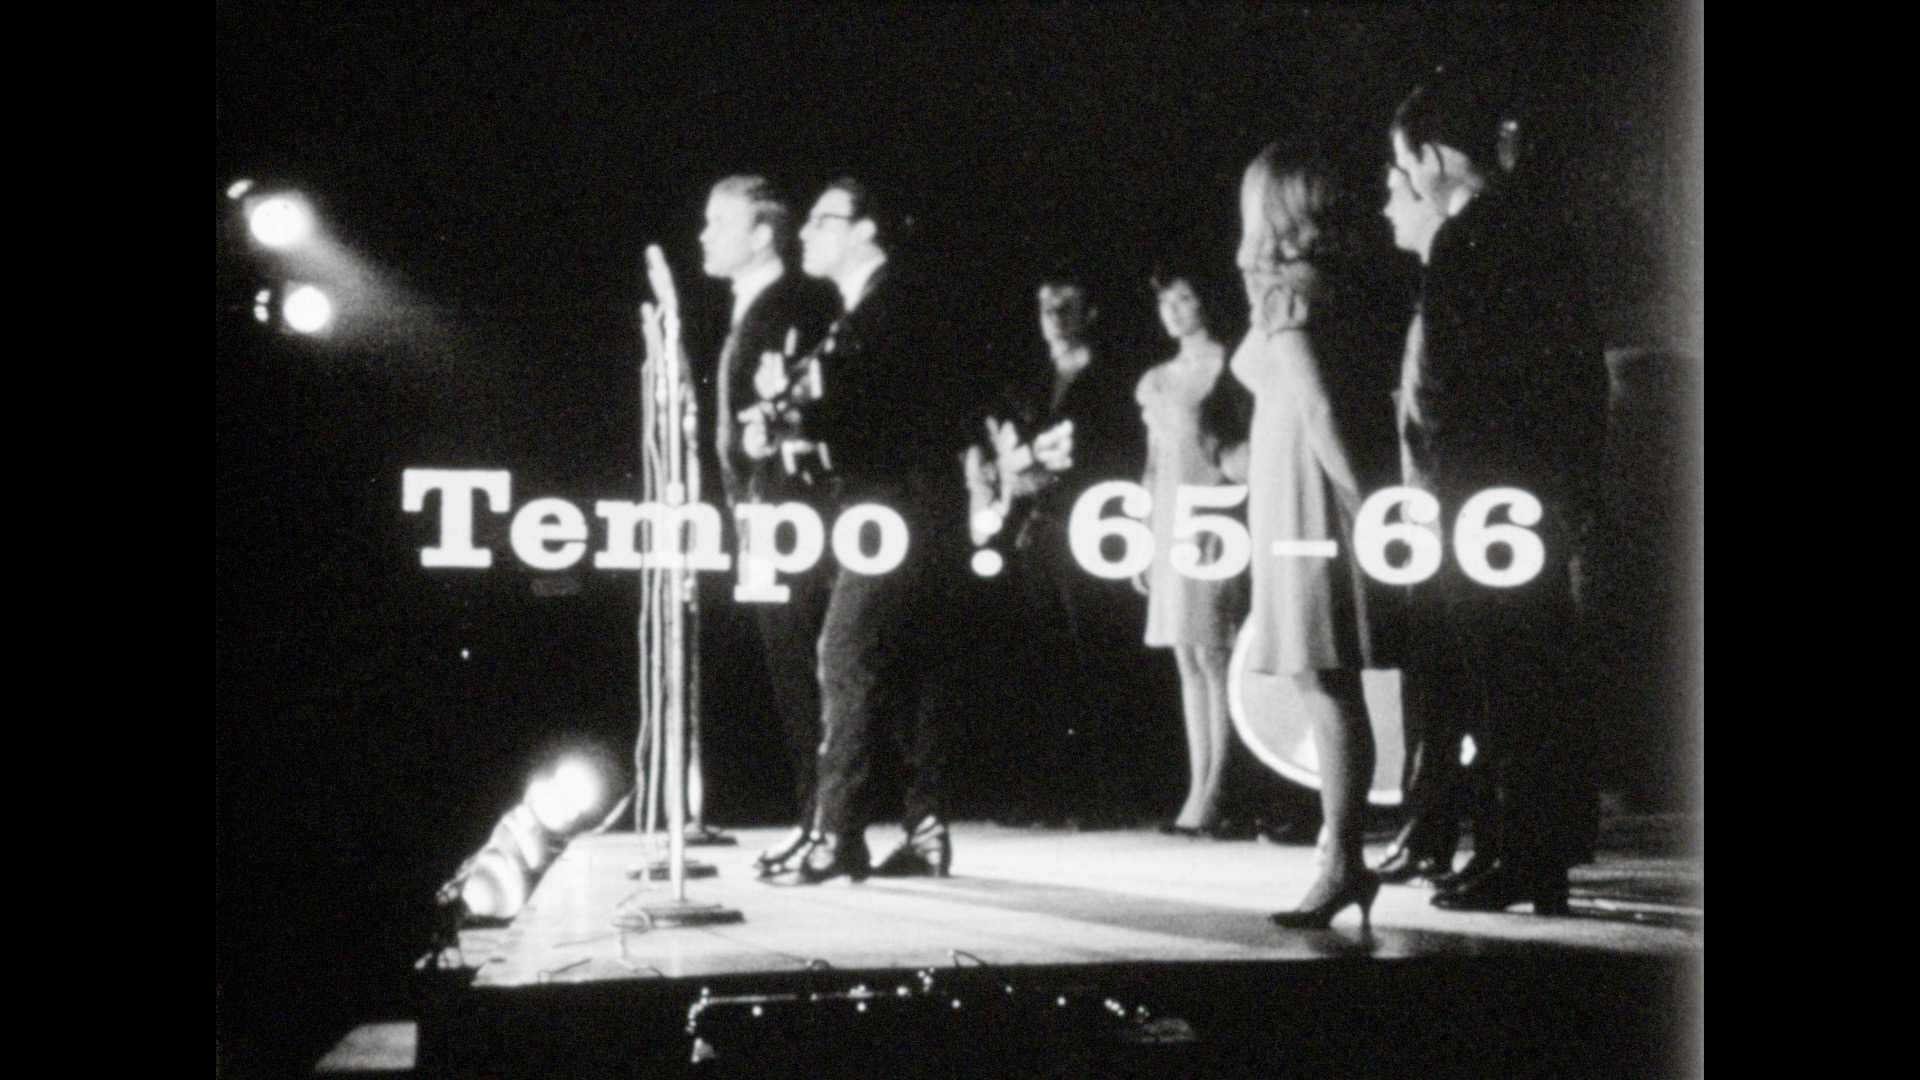 Tempo, 1965-1966